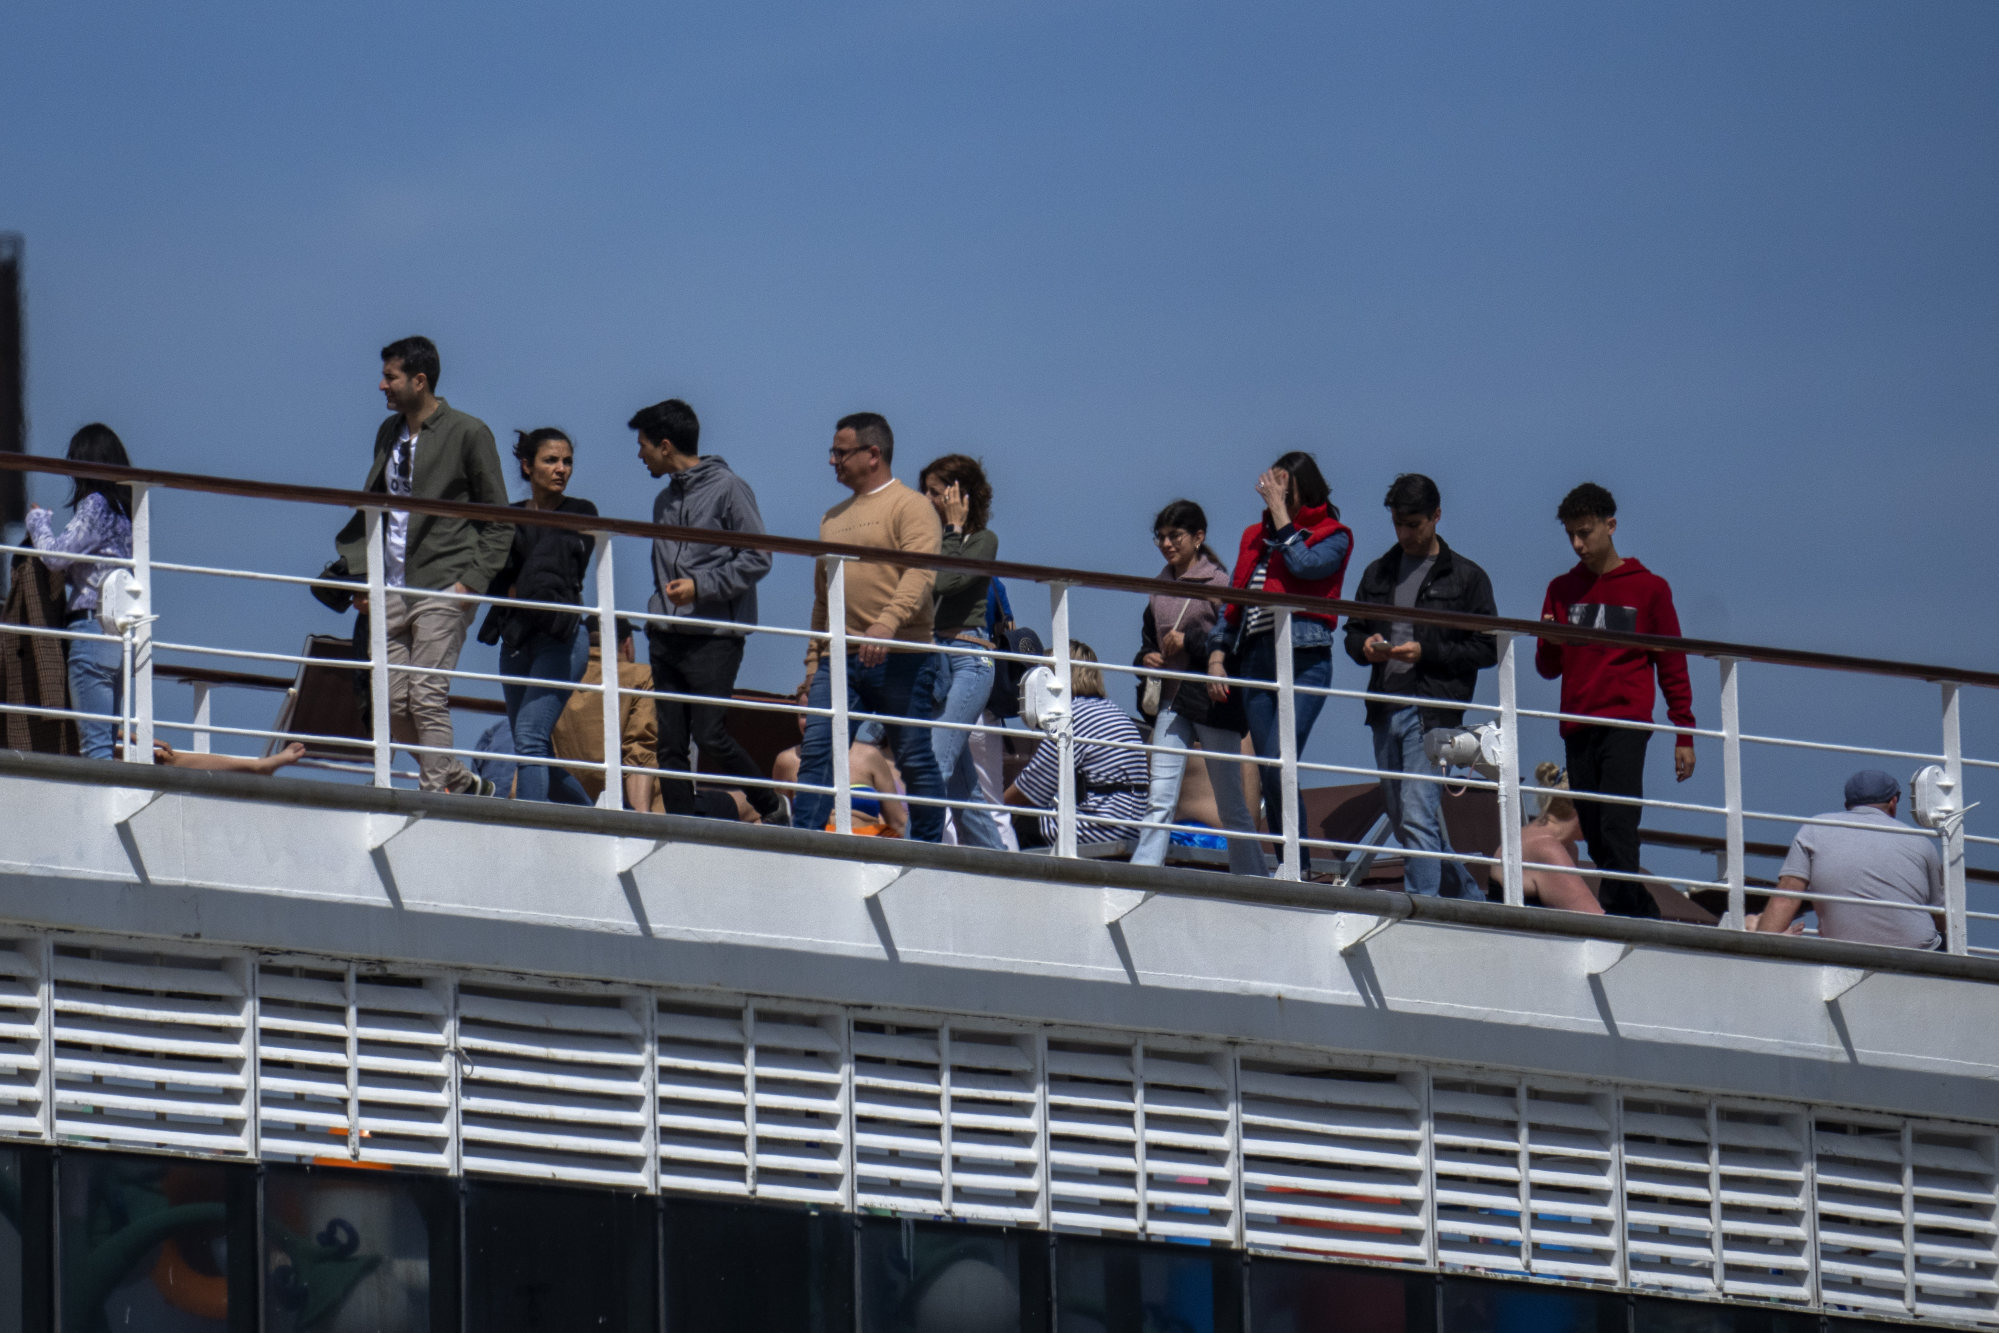 1.500 personas varadas en el crucero MSC Armony en España por problemas de visado para pasajeros bolivianos